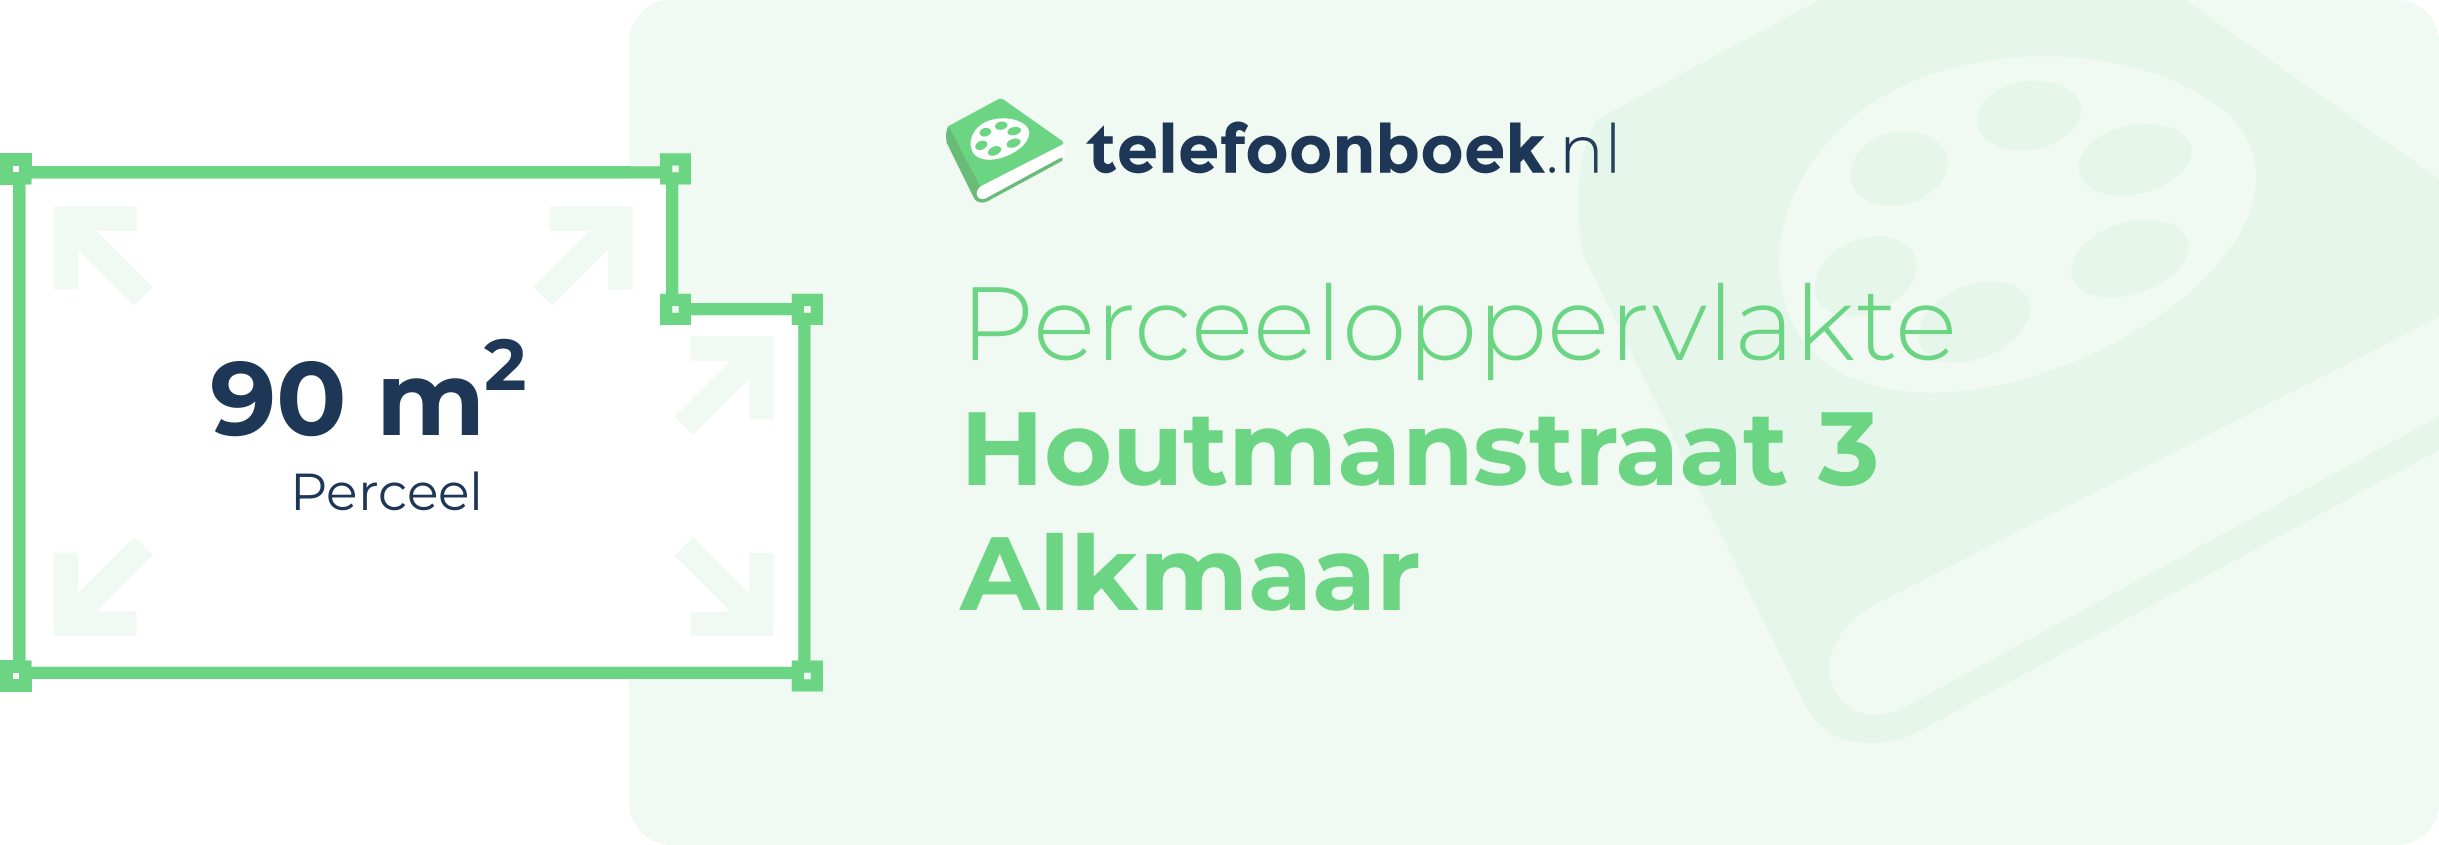 Perceeloppervlakte Houtmanstraat 3 Alkmaar